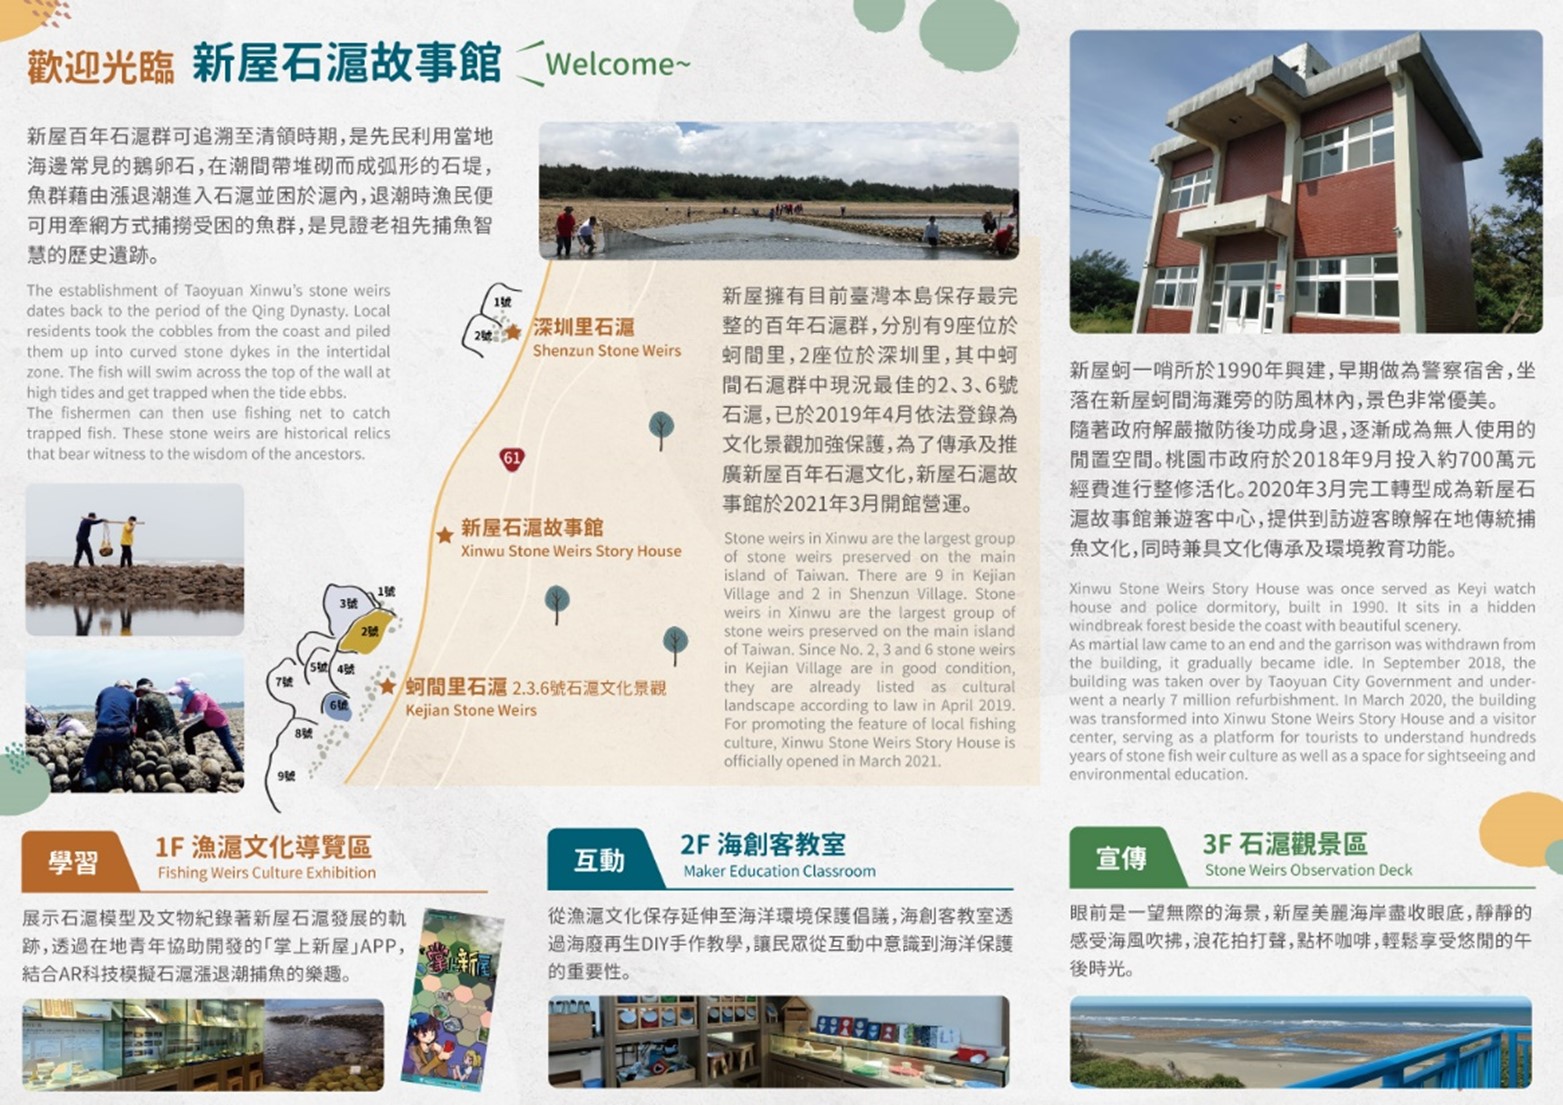 新屋石滬故事館提供漁滬文化導覽及海創客教室體驗，歡迎民眾預約